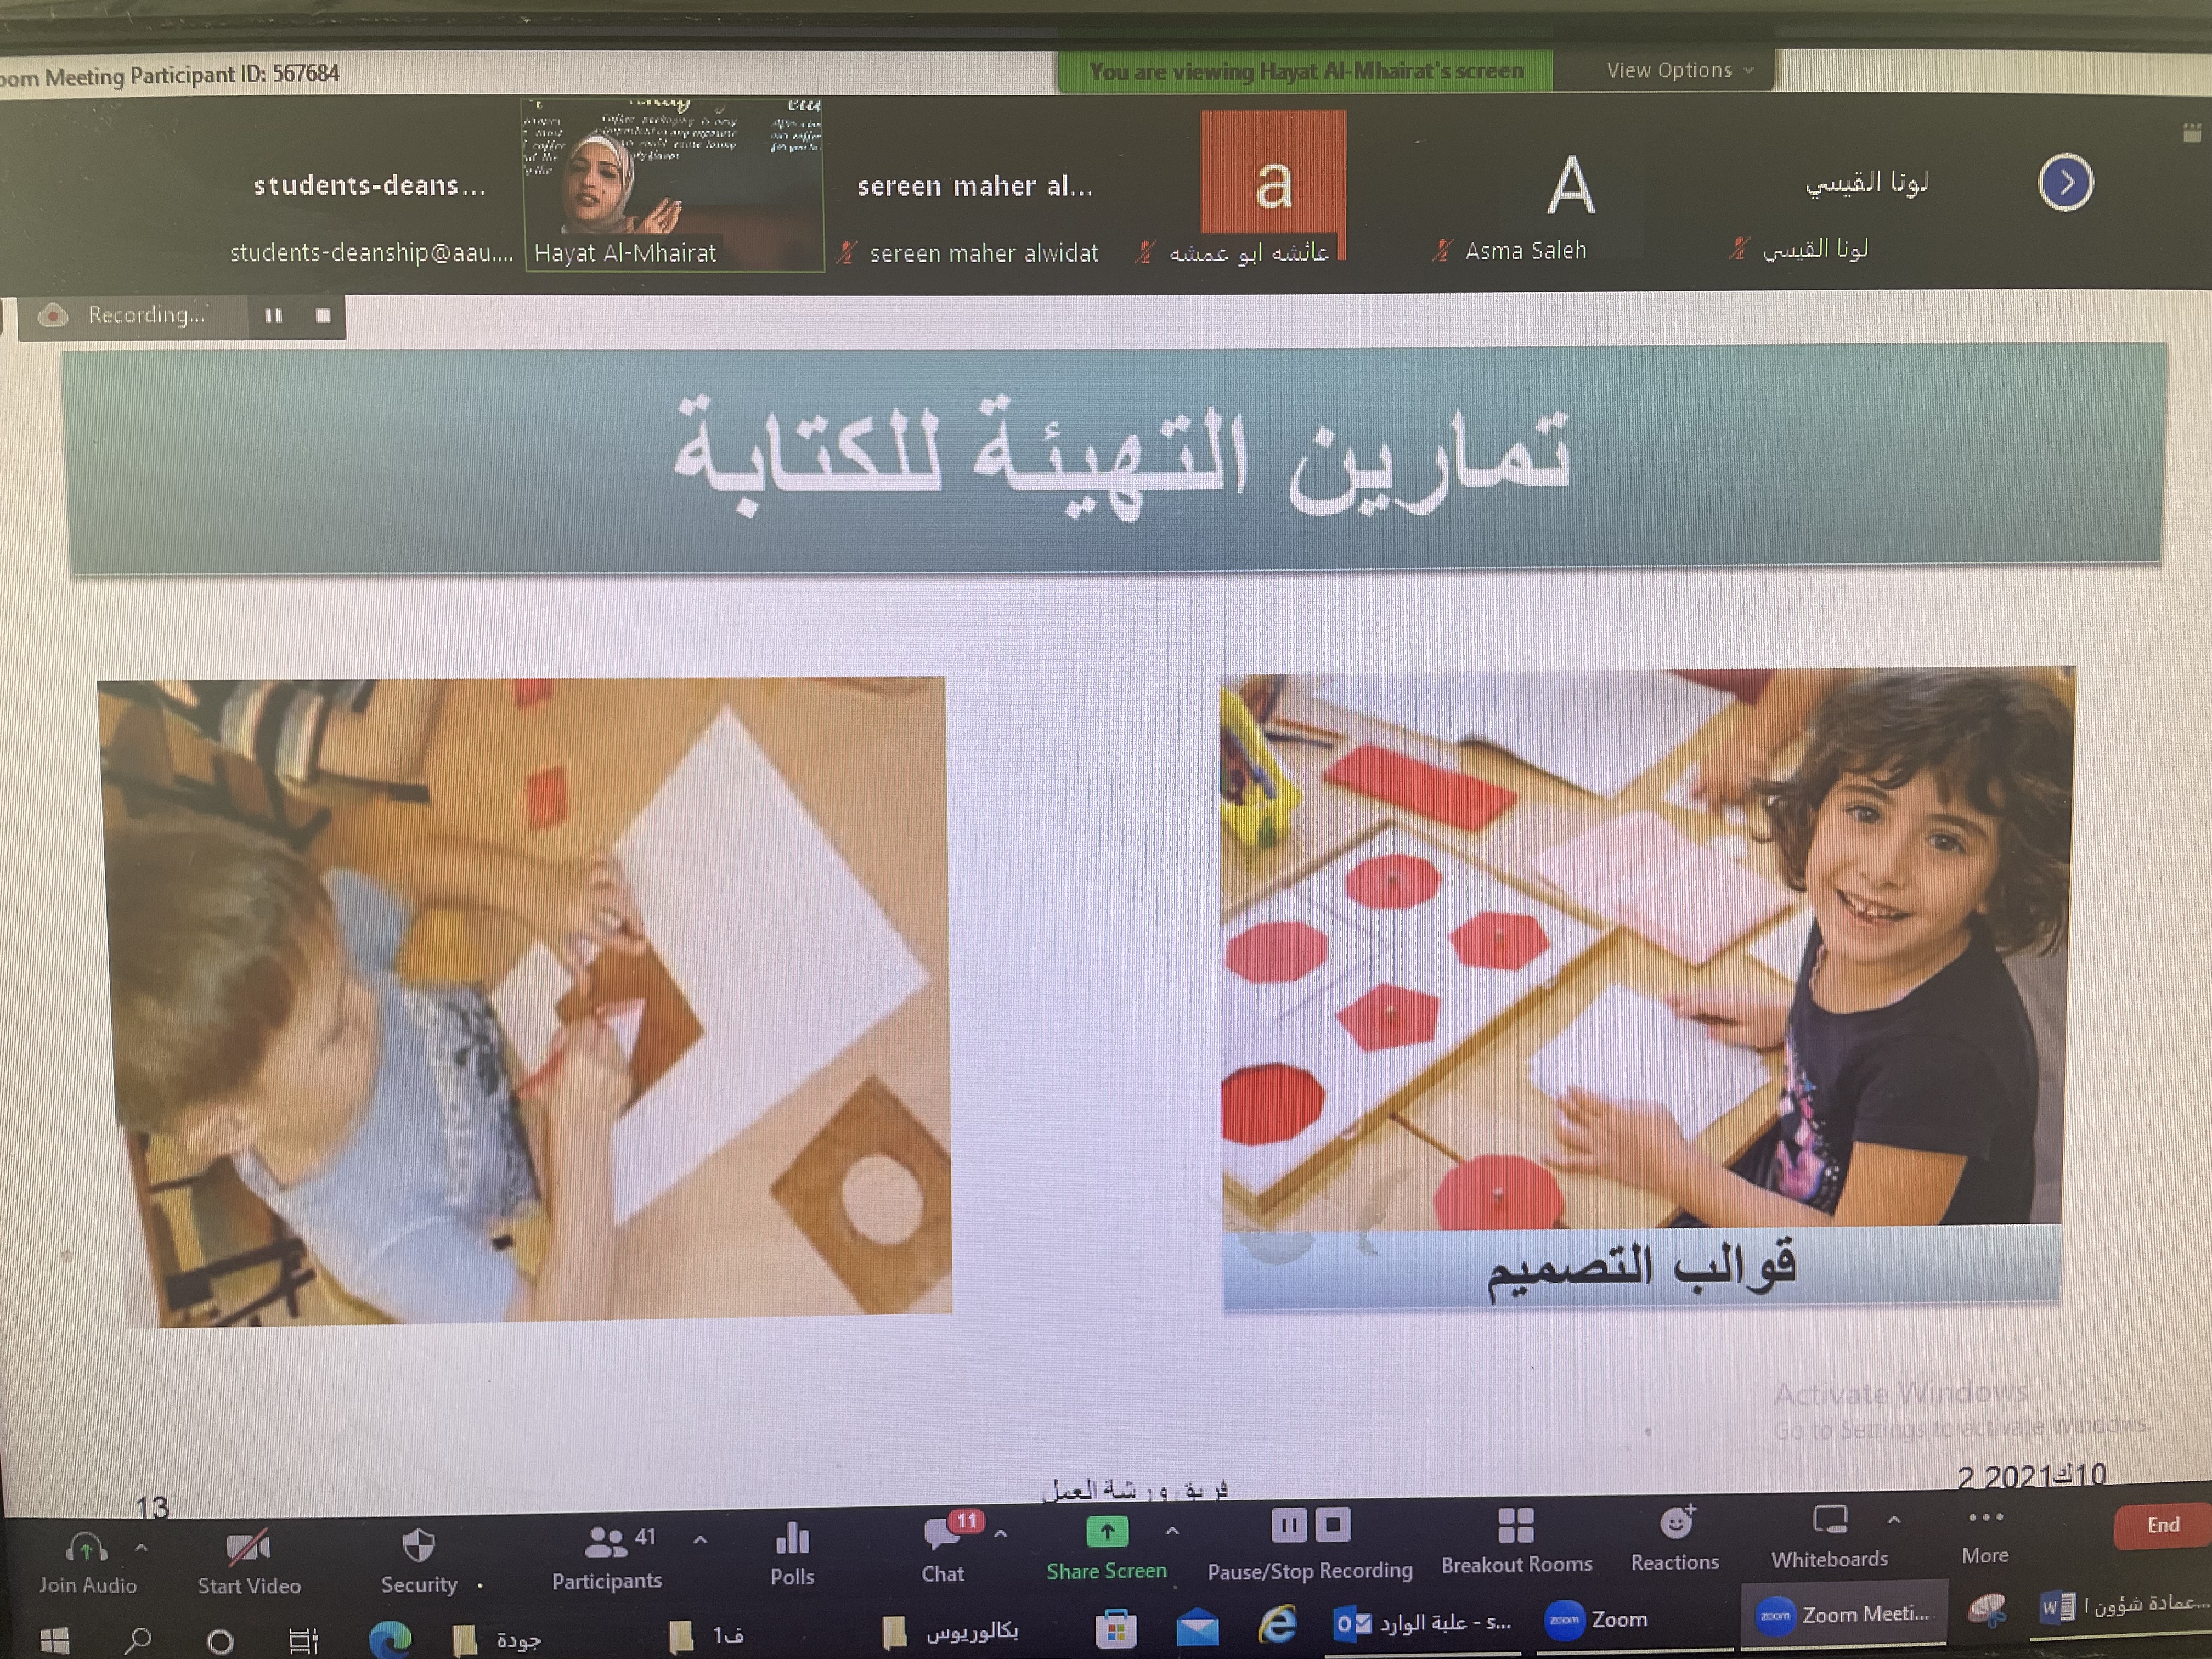 دورة "إعداد معلم المونتيسوري" لطلبة جامعة عمان العربية1